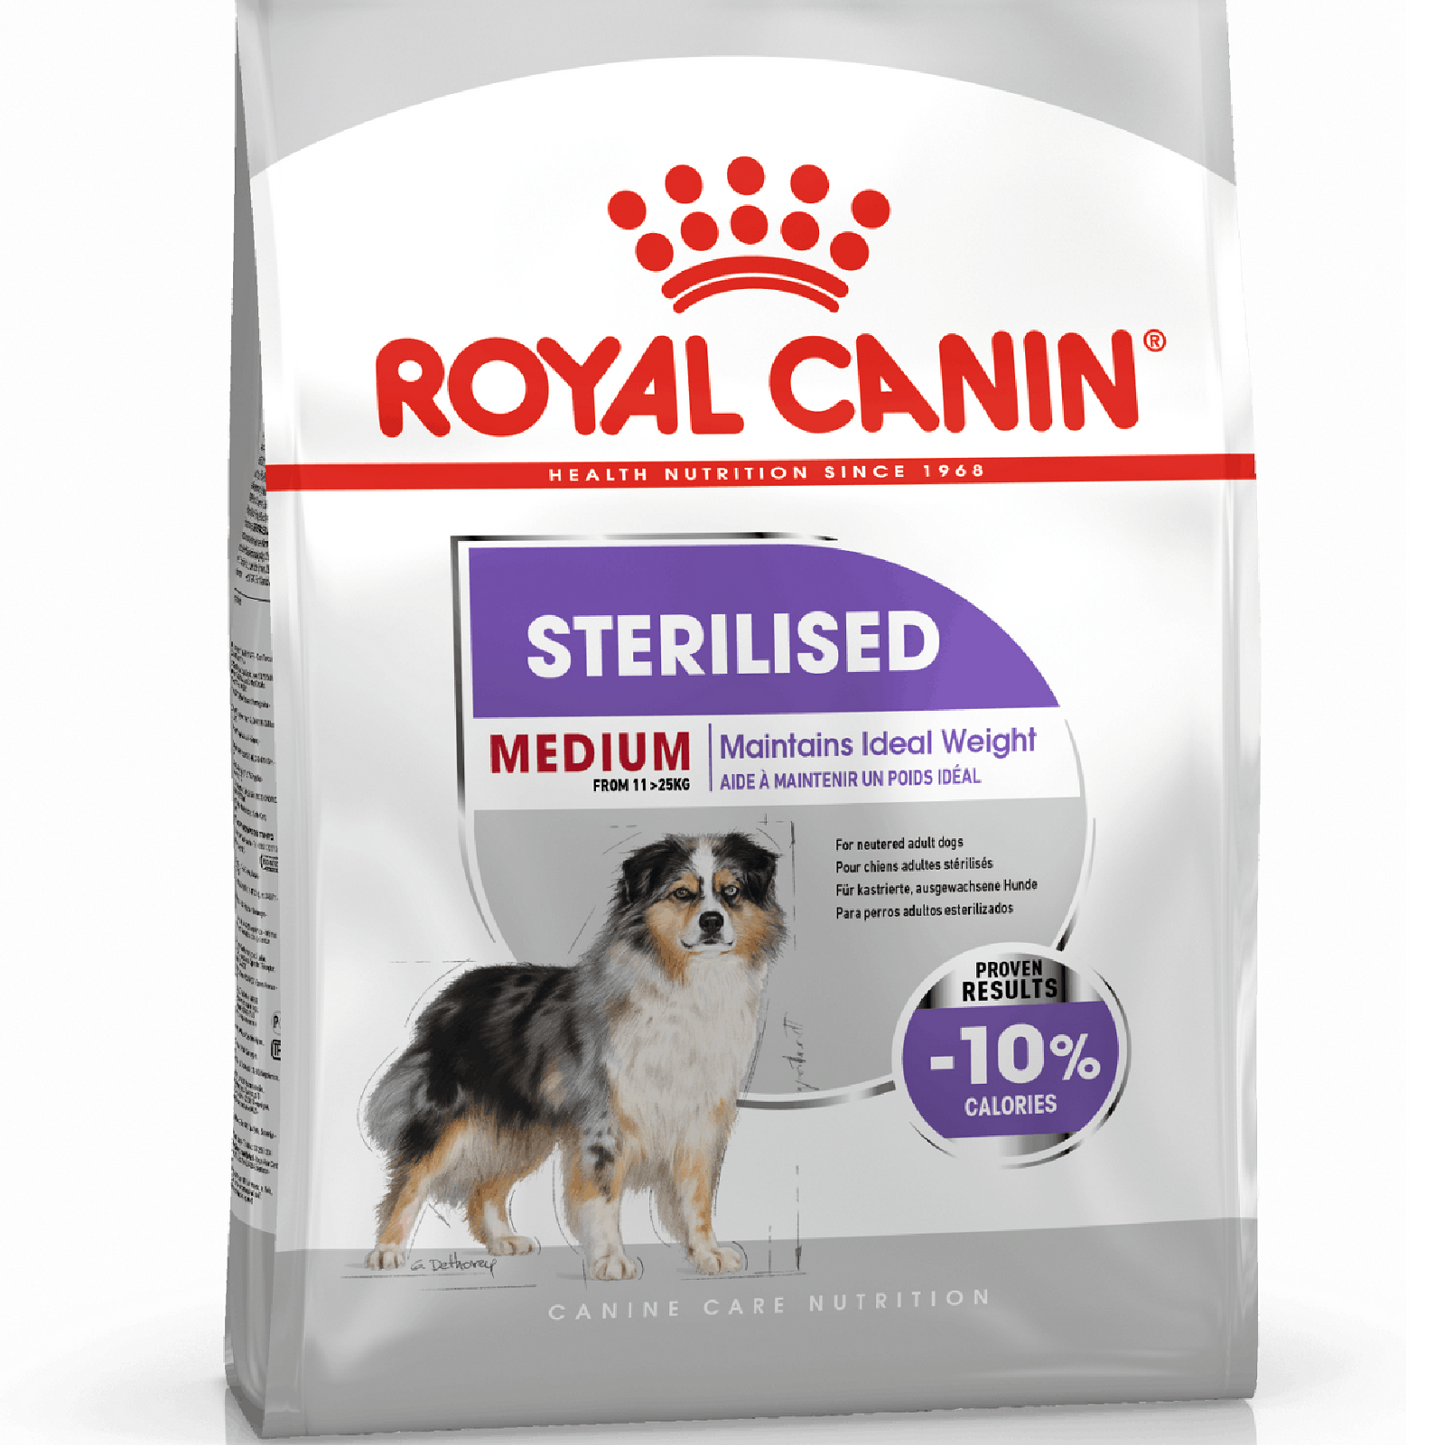 ROYAL CANIN - Medium Sterilised (12kg)